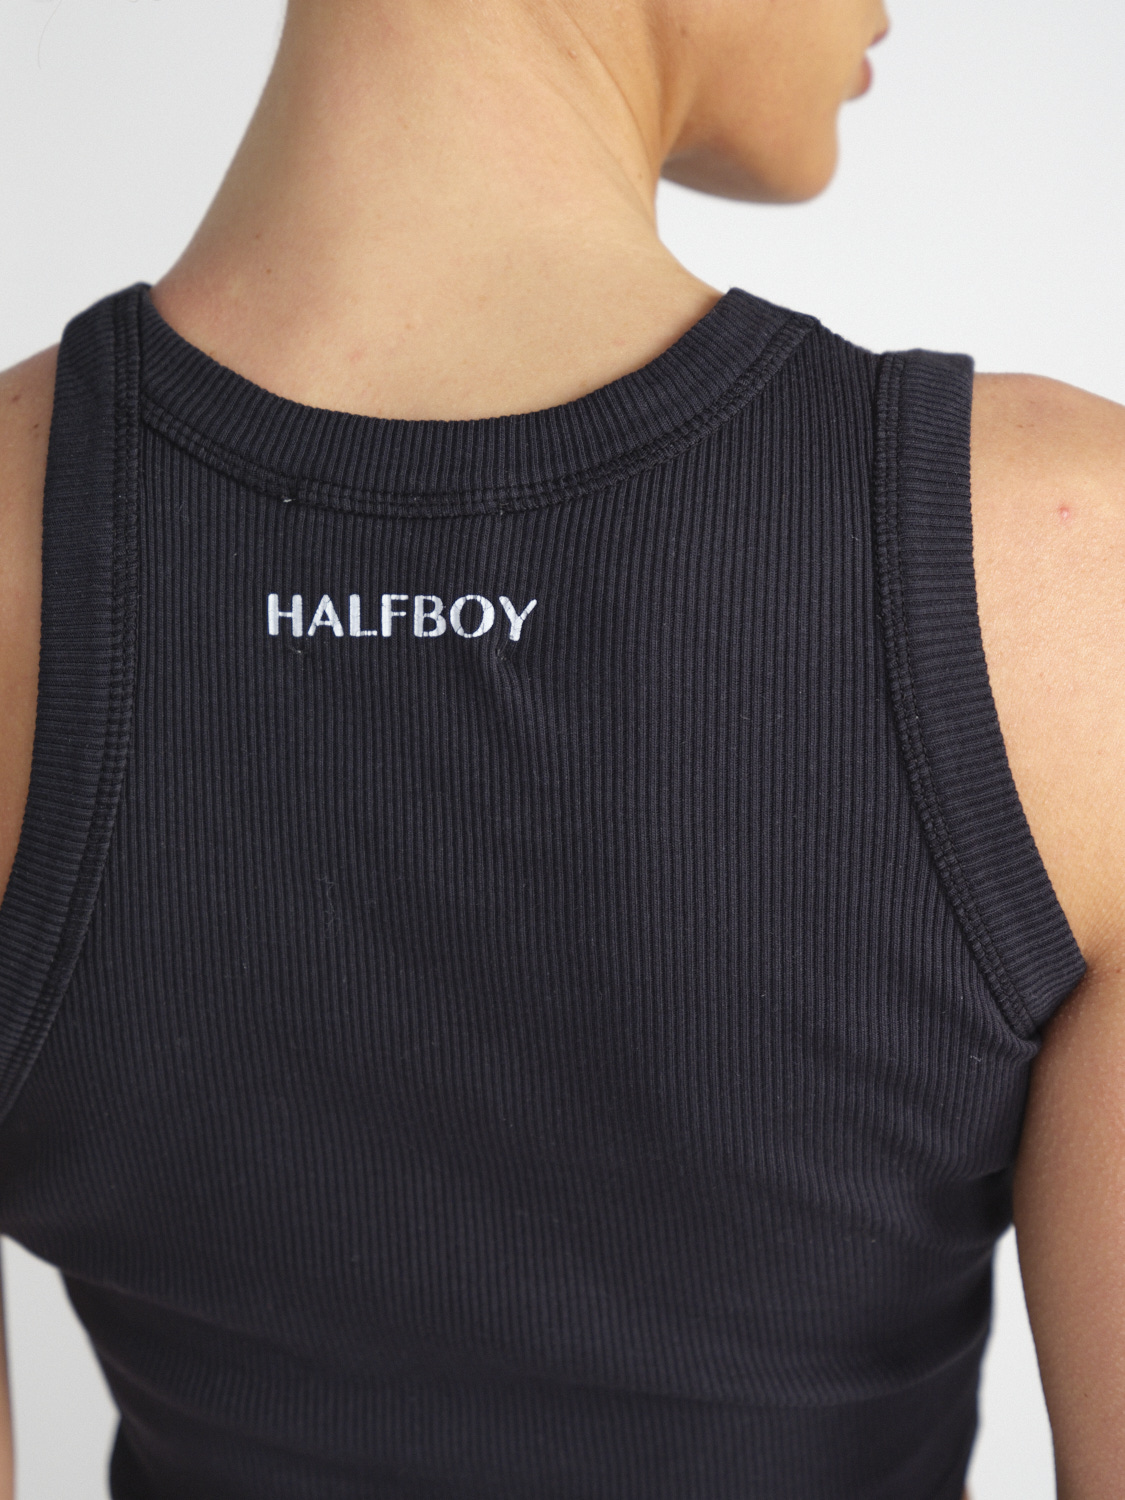 Halfboy Crop – Cropped Baumwoll-Tank-Top mit Logo-Detail   schwarz XS